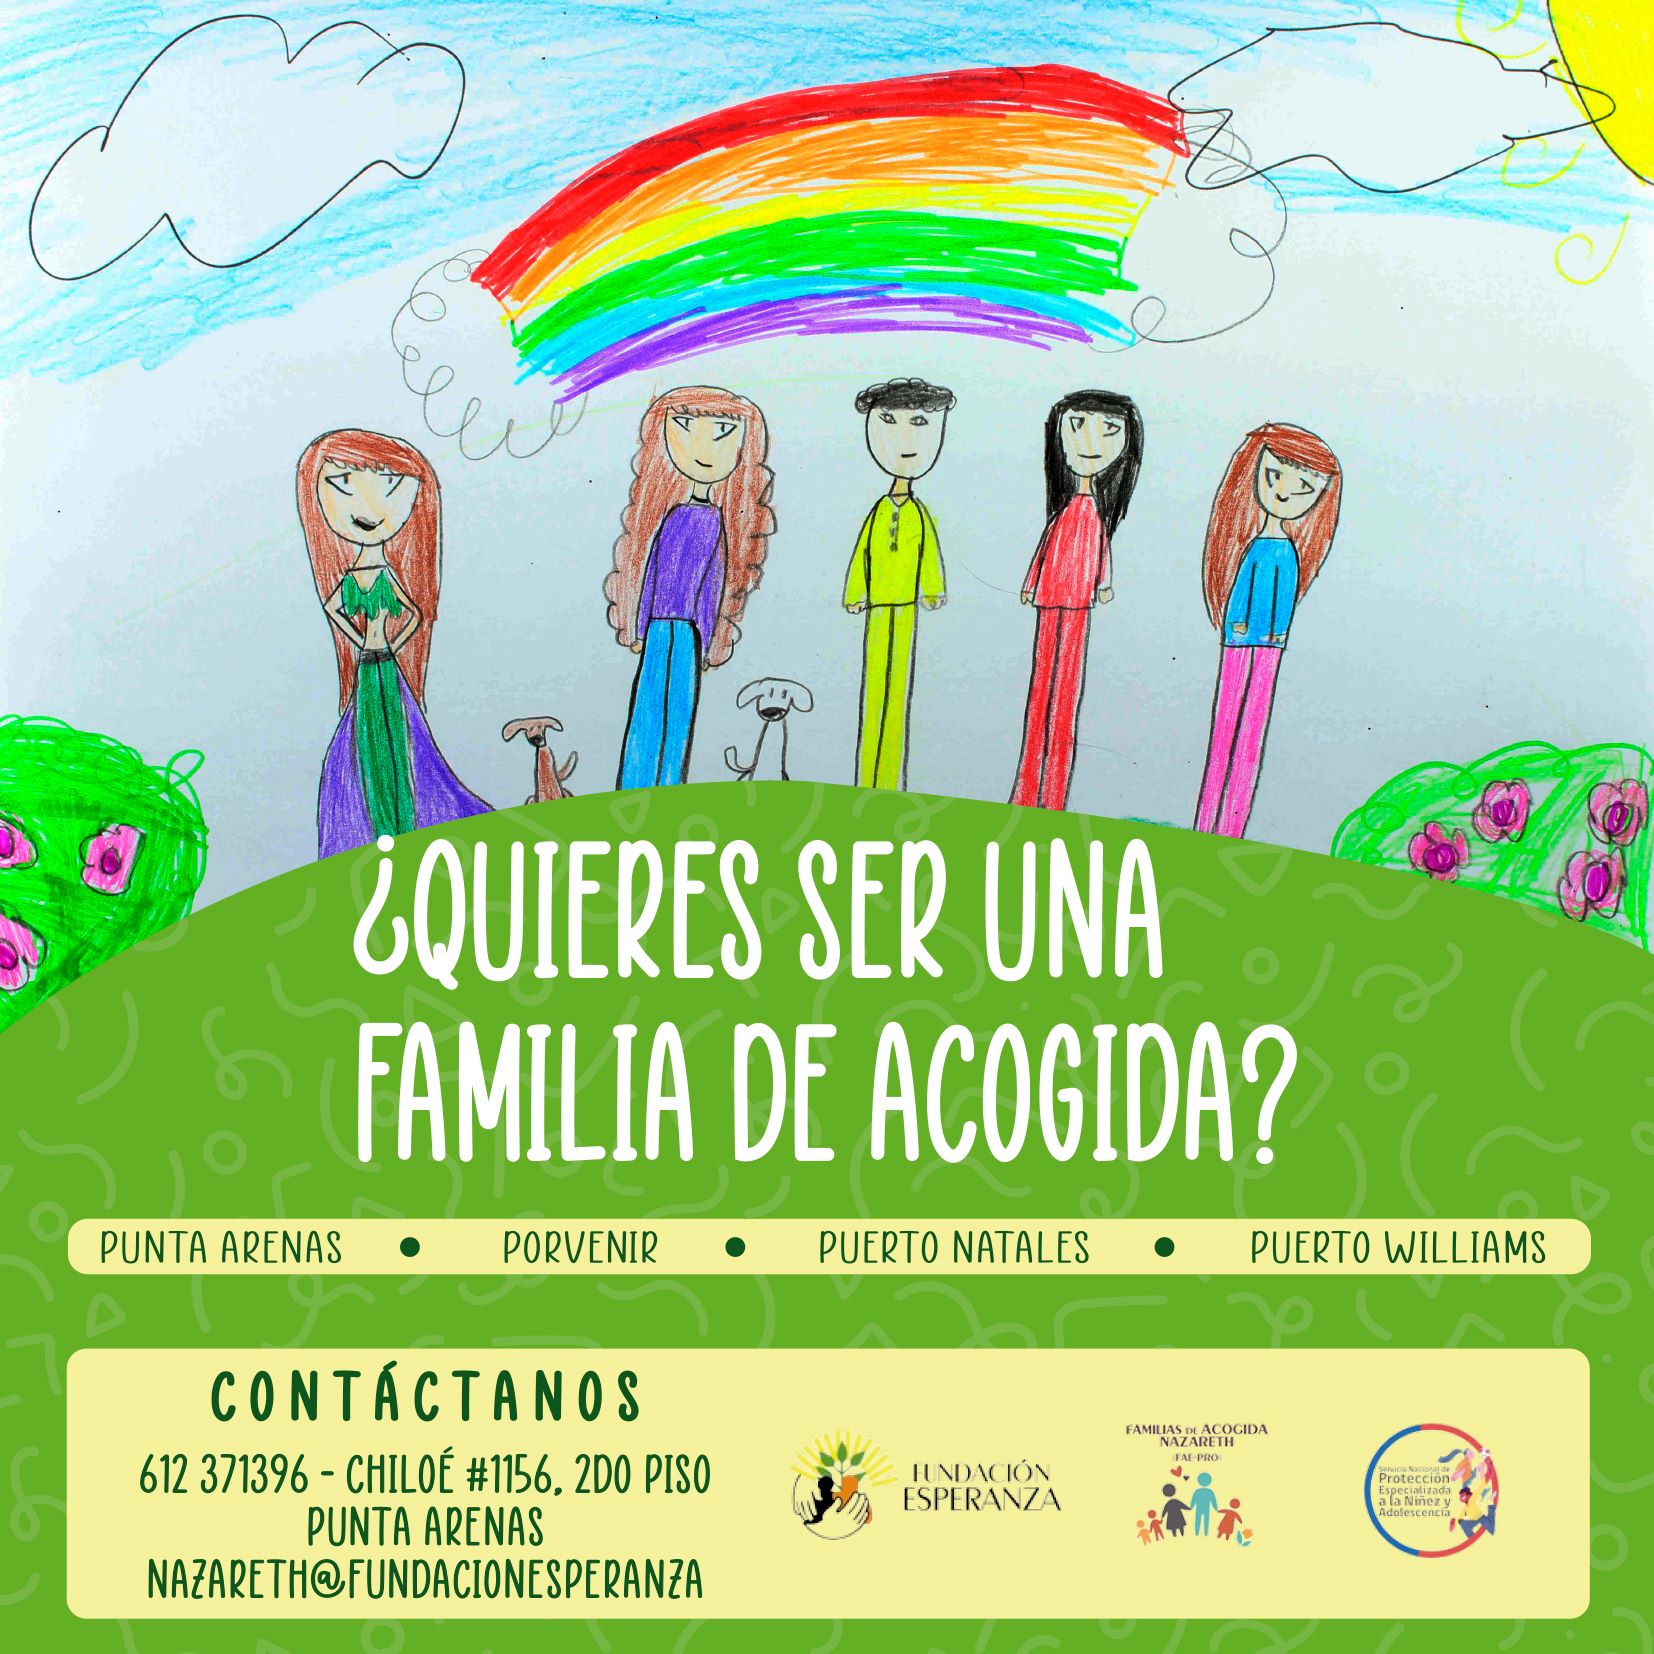 Servicio de Protección Especializada promueve telemáticamente Familias de Acogida en Porvenir y Puerto Williams